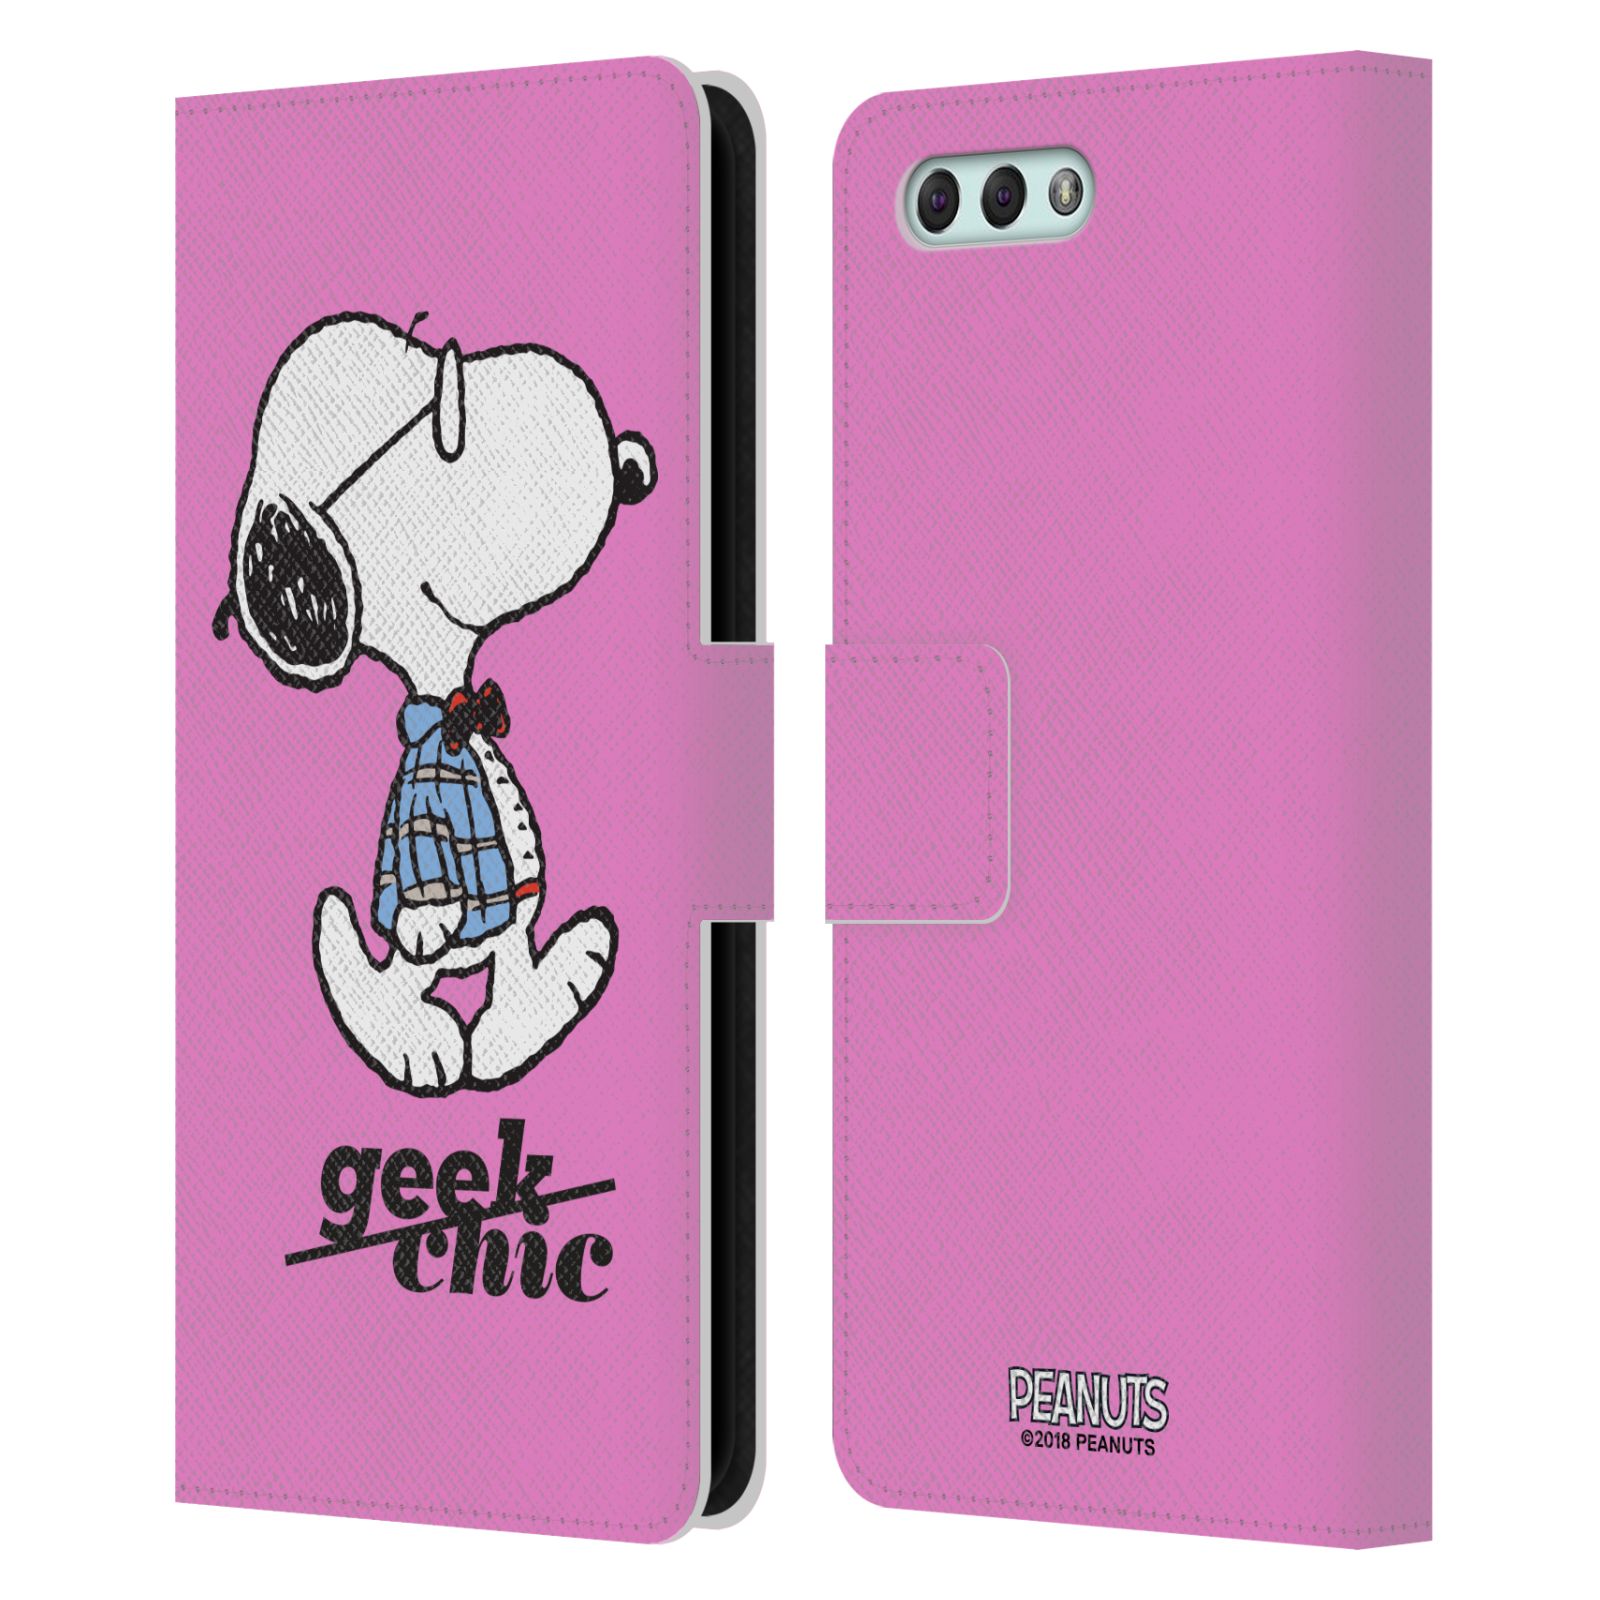 Pouzdro na mobil Asus Zenfone 4 ZE554KL - Head Case - Peanuts - růžový pejsek snoopy nerd